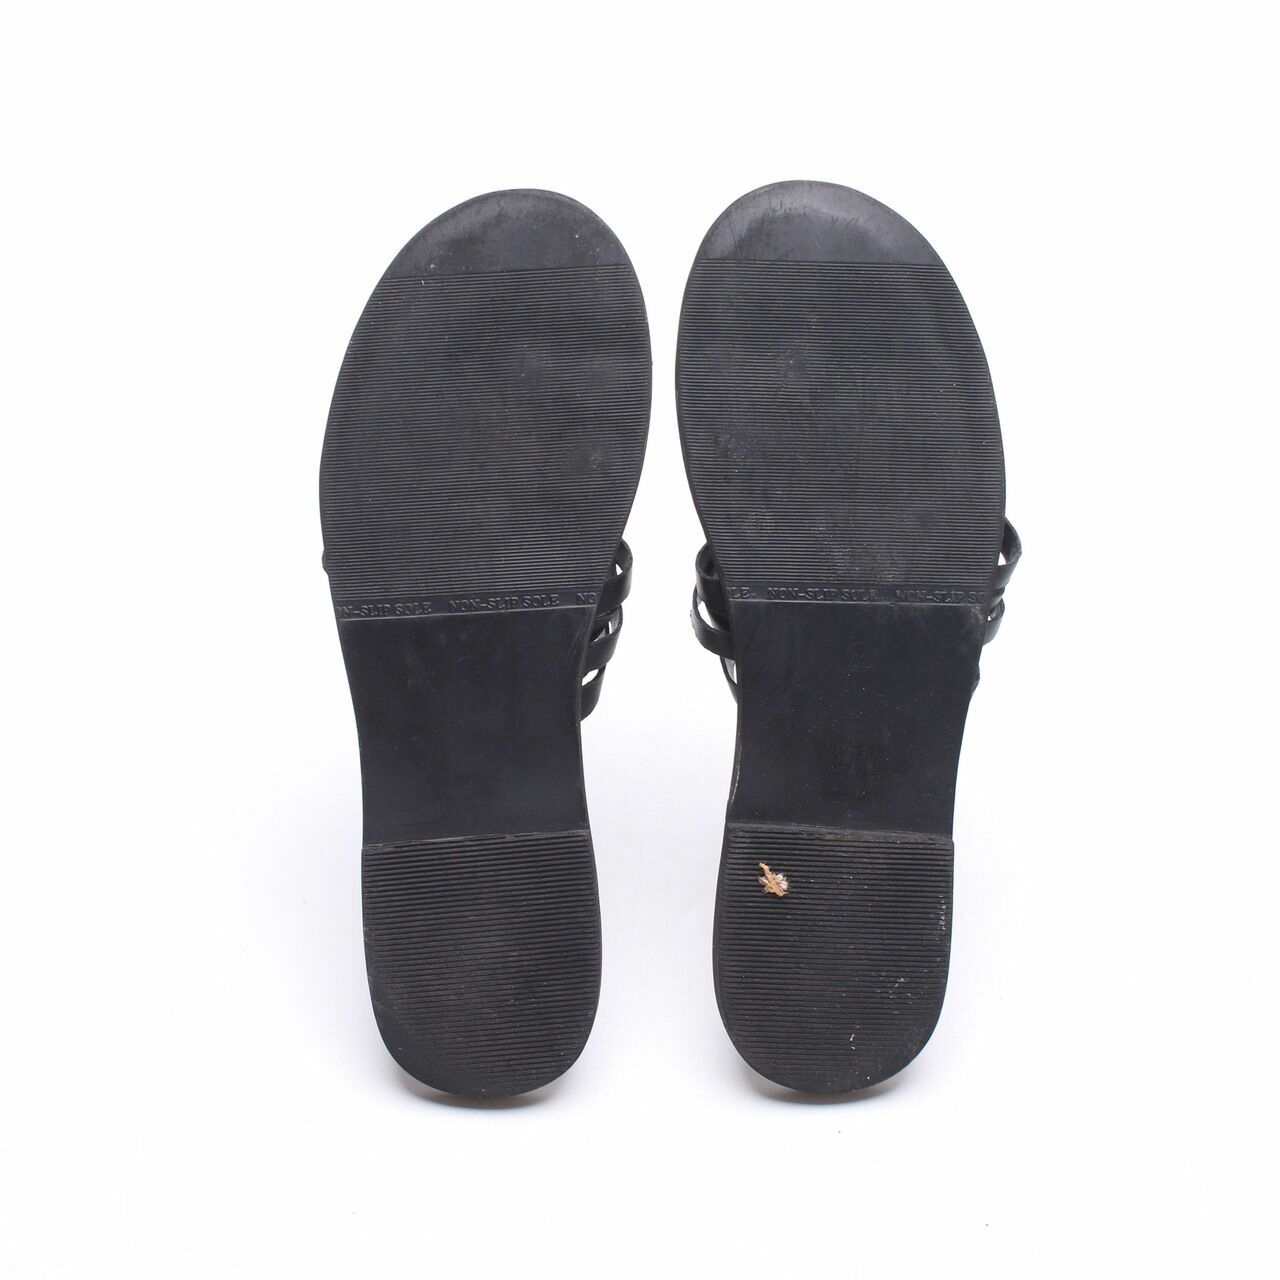 protea Black Sandals